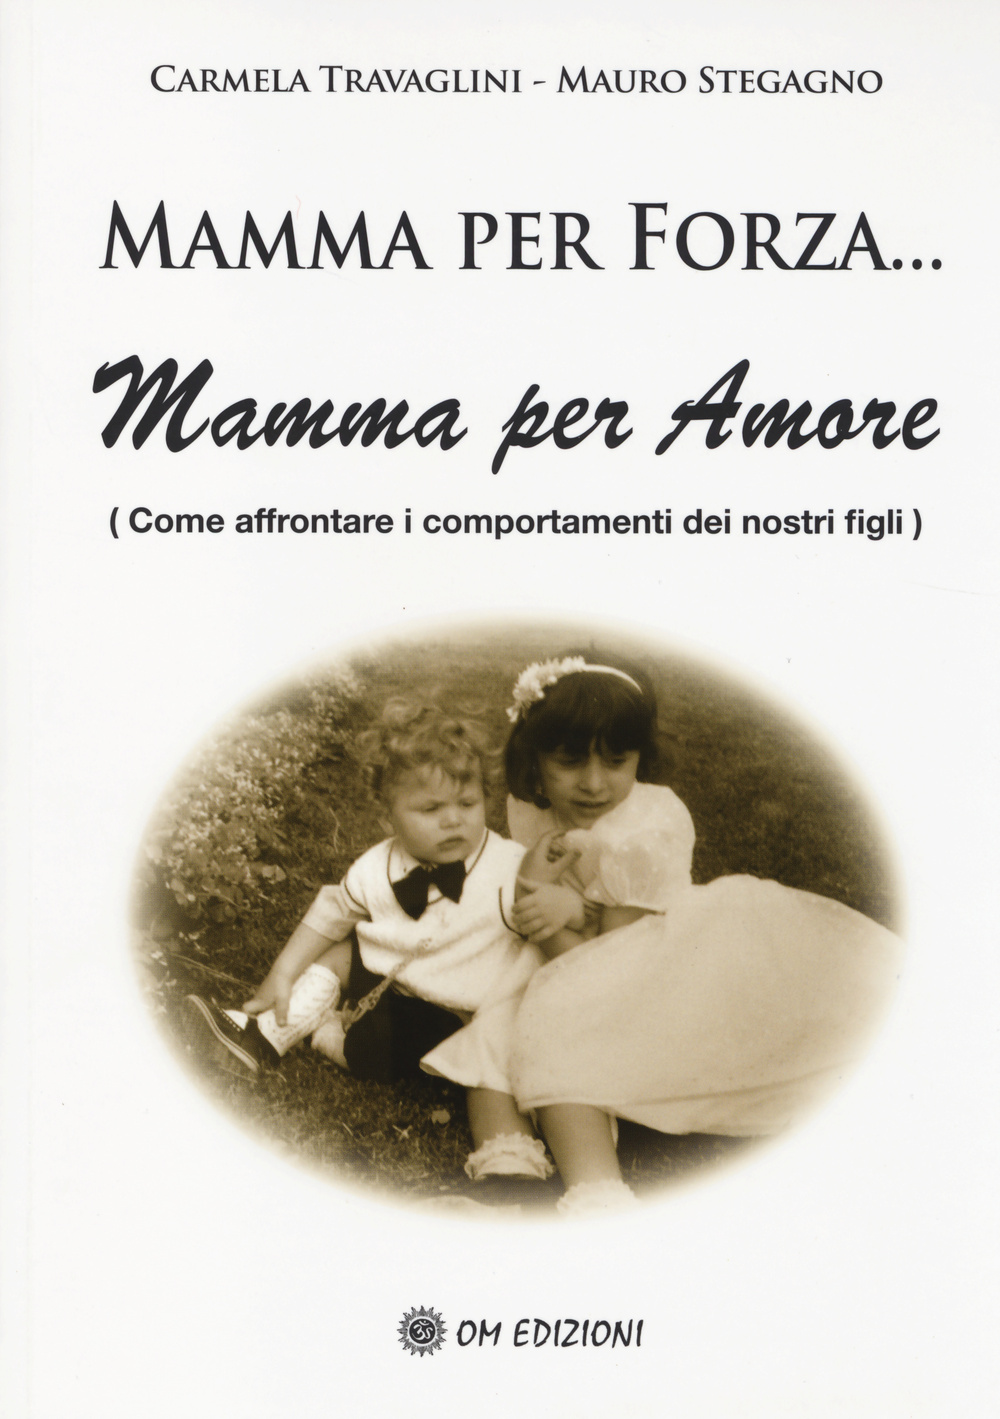 Image of Mamma per forza... Mamma per amore. Come affrontare i comportamenti dei nostri figli